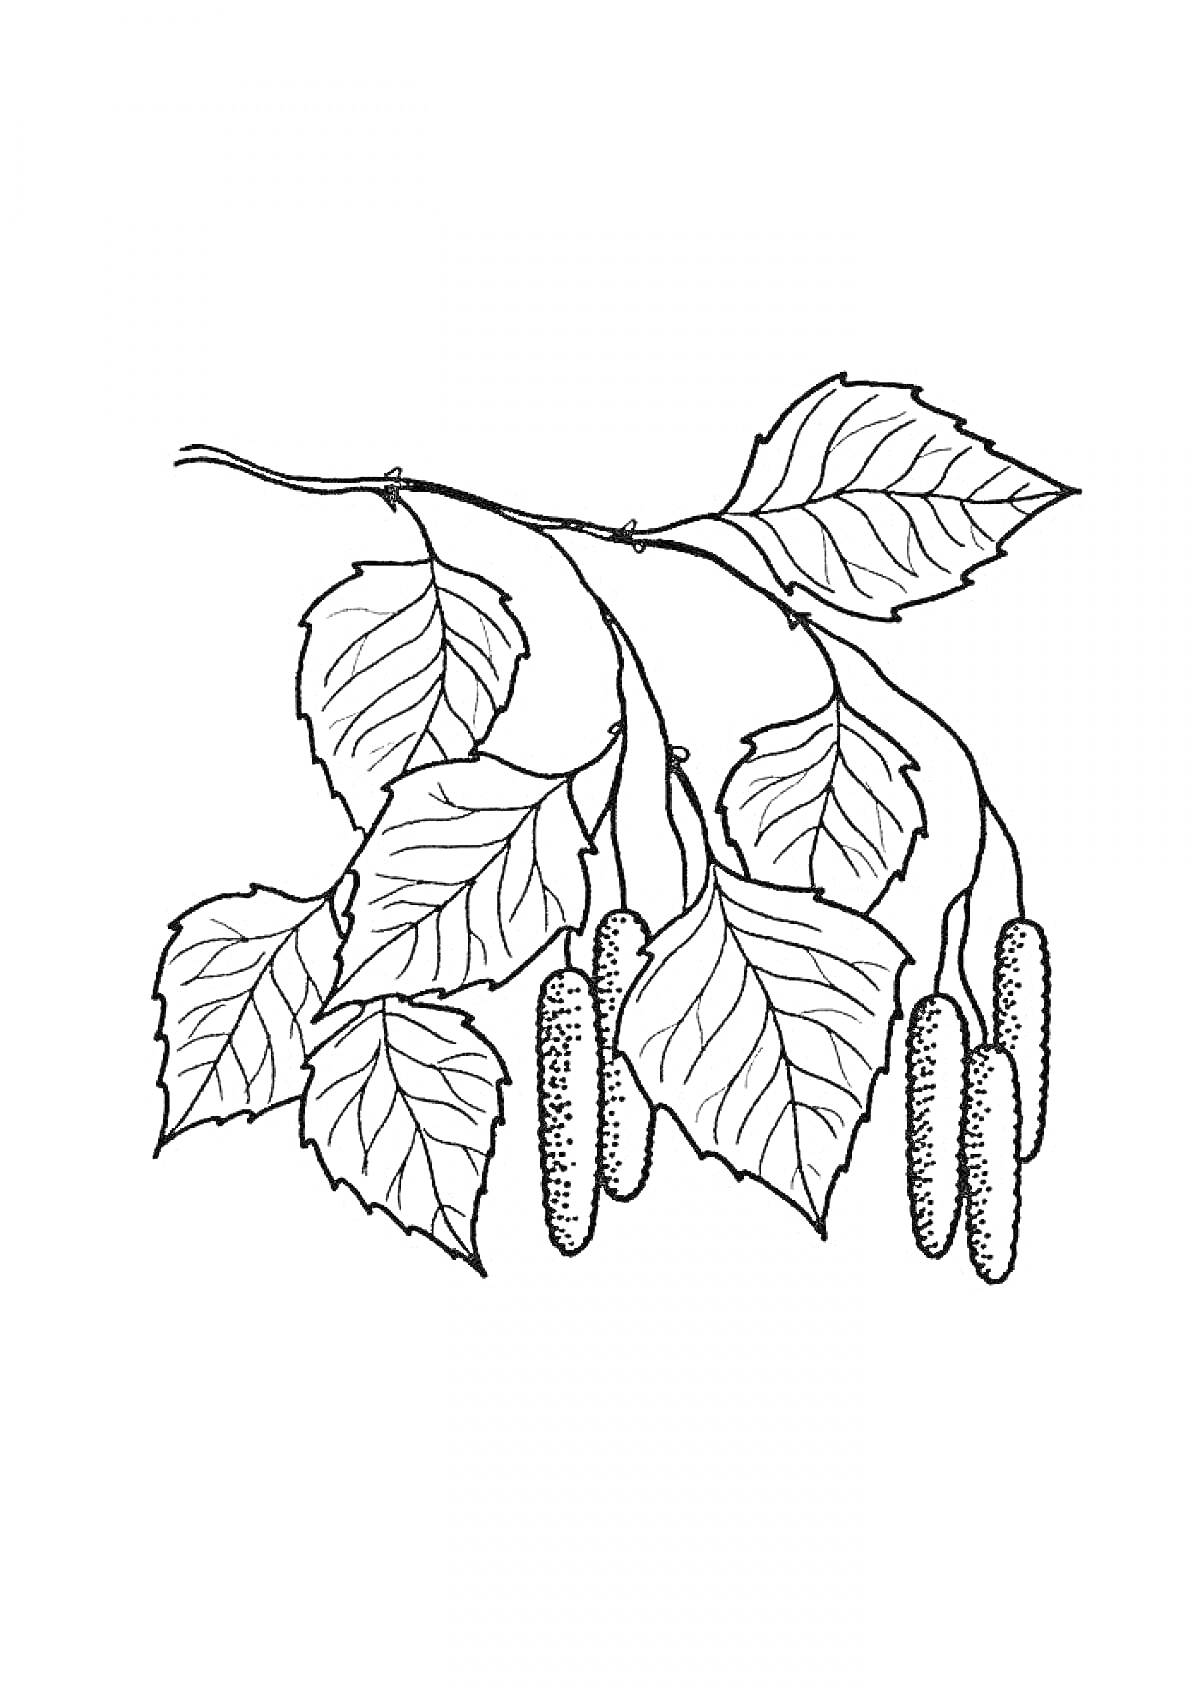 Ветка березы с листьями и сережками